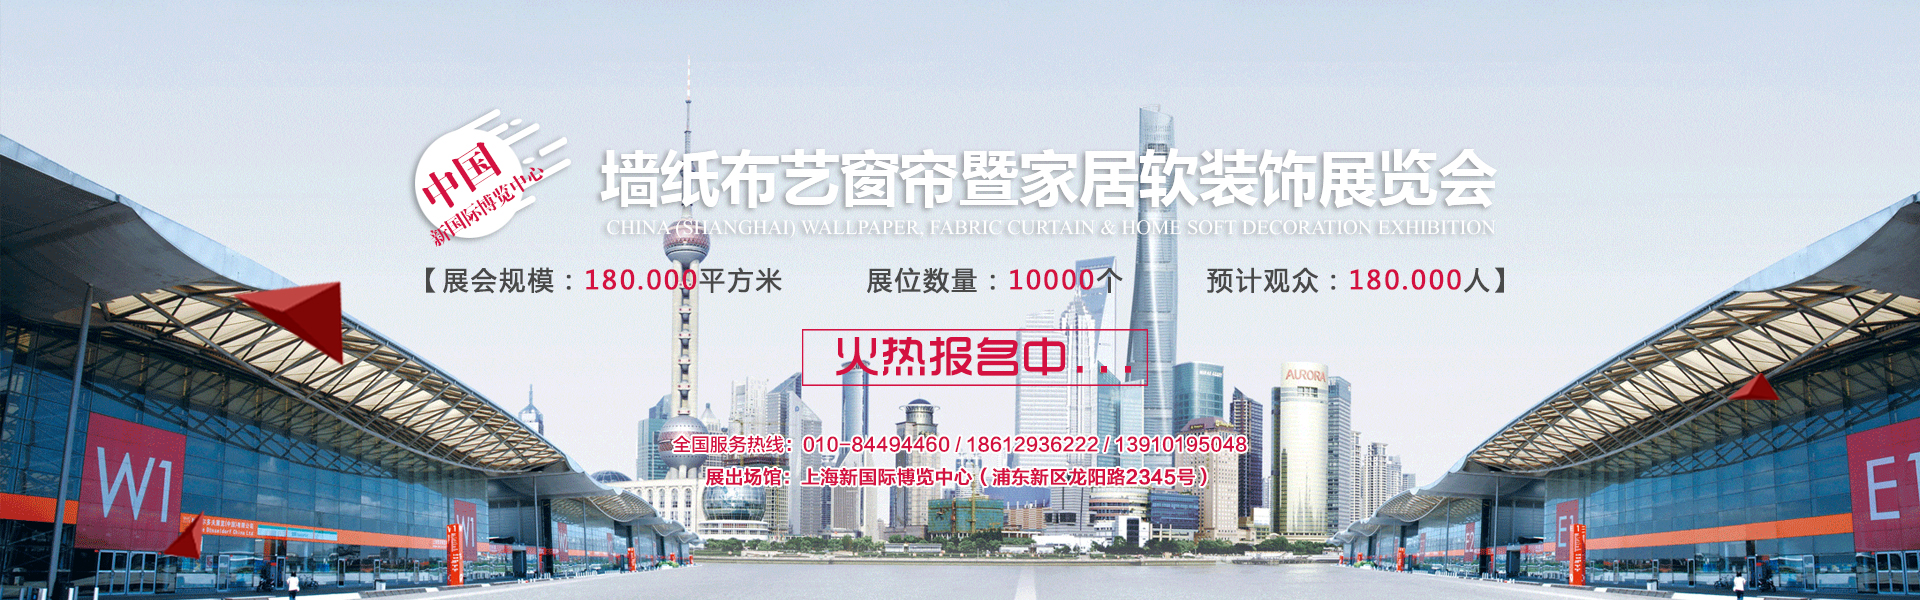 上海墙布展览会《展位咨询》第30届上海壁布墙布展会